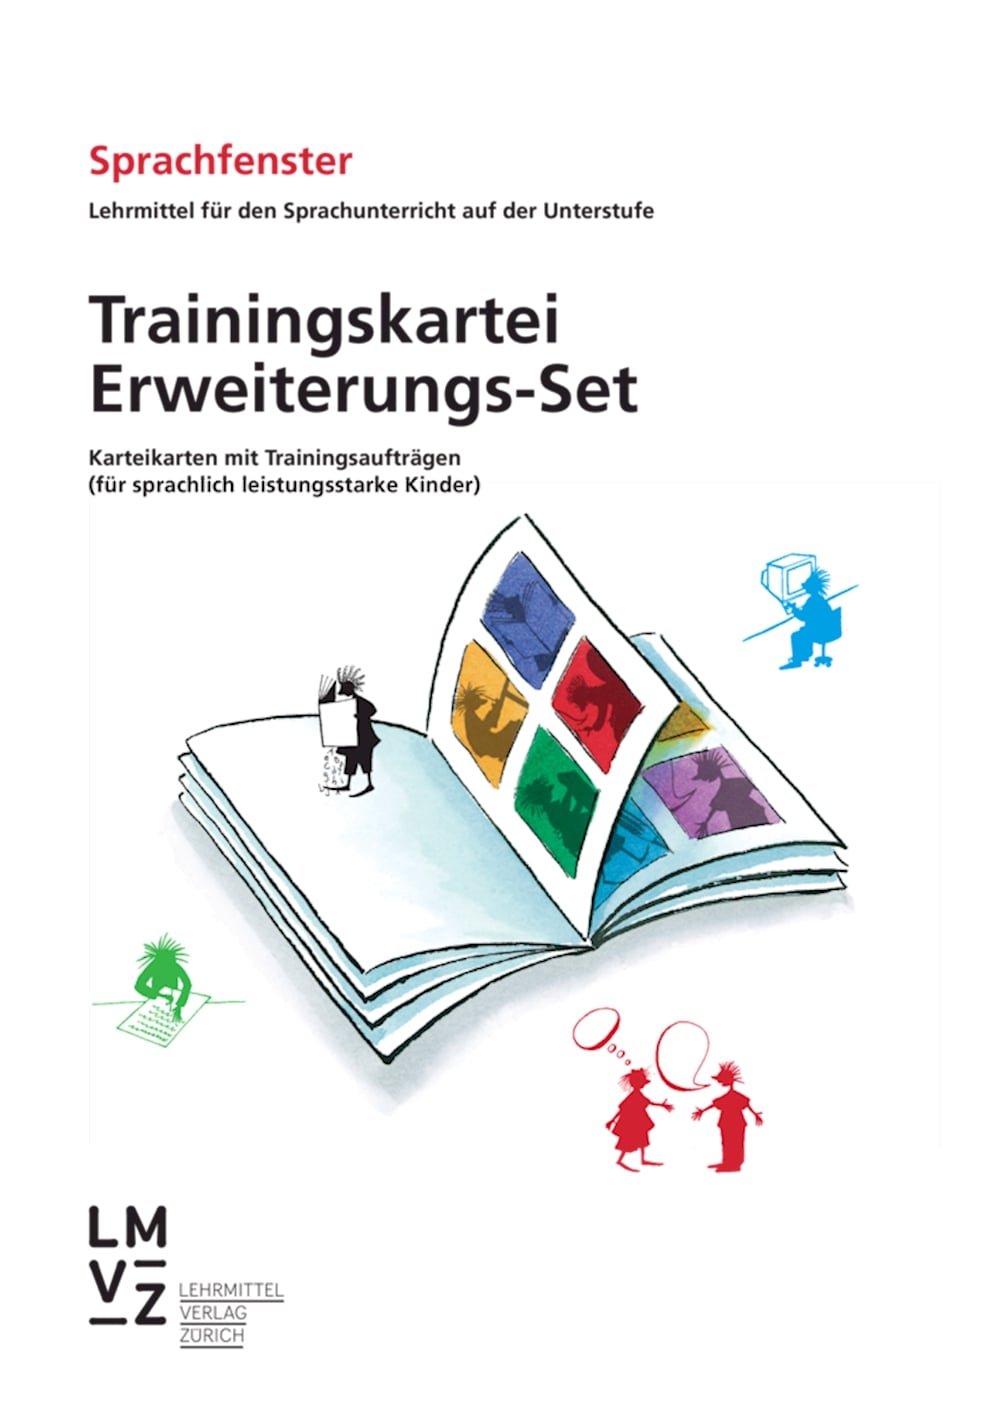 Sprachfenster Trainingskartei Erweiterungs-Set